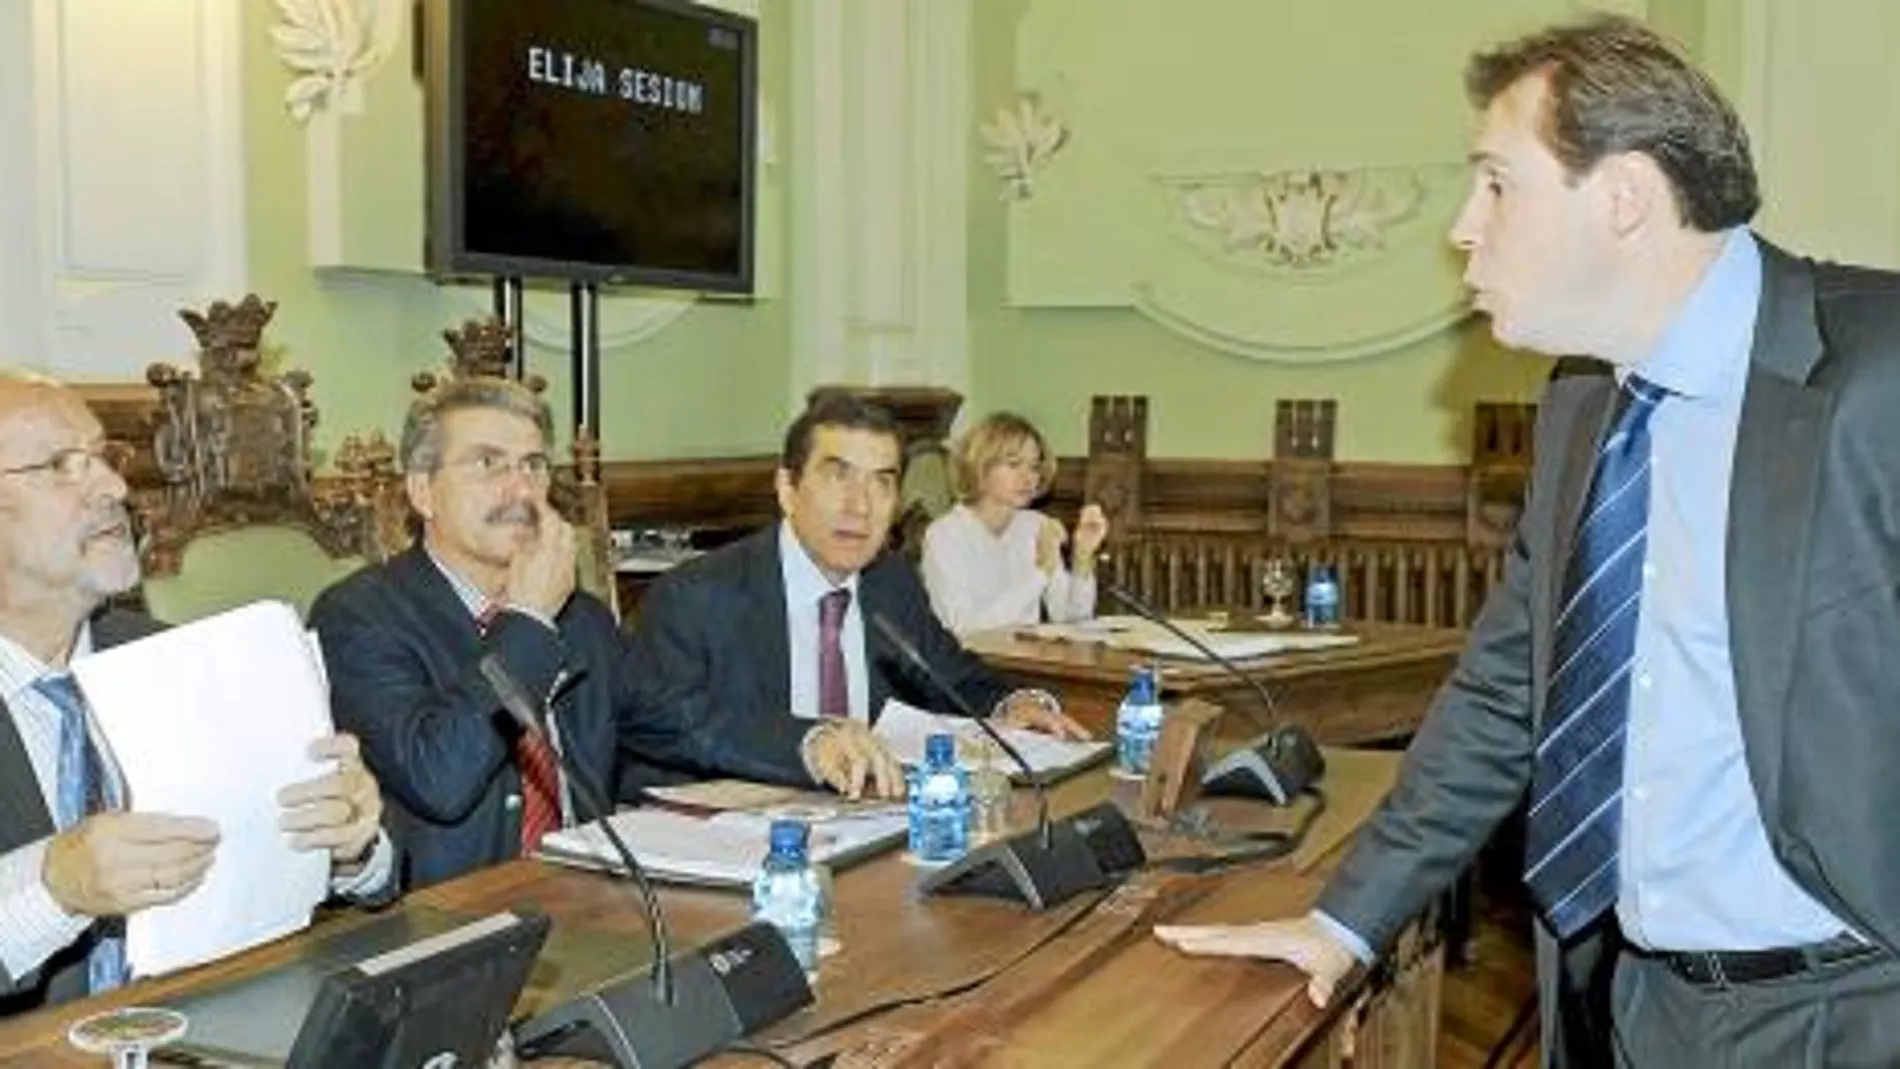 El portavoz del PSOE, Óscar Puente, se dirige al alcalde León de la Riva, en presencia de Sánchez y Jesús Enríquez